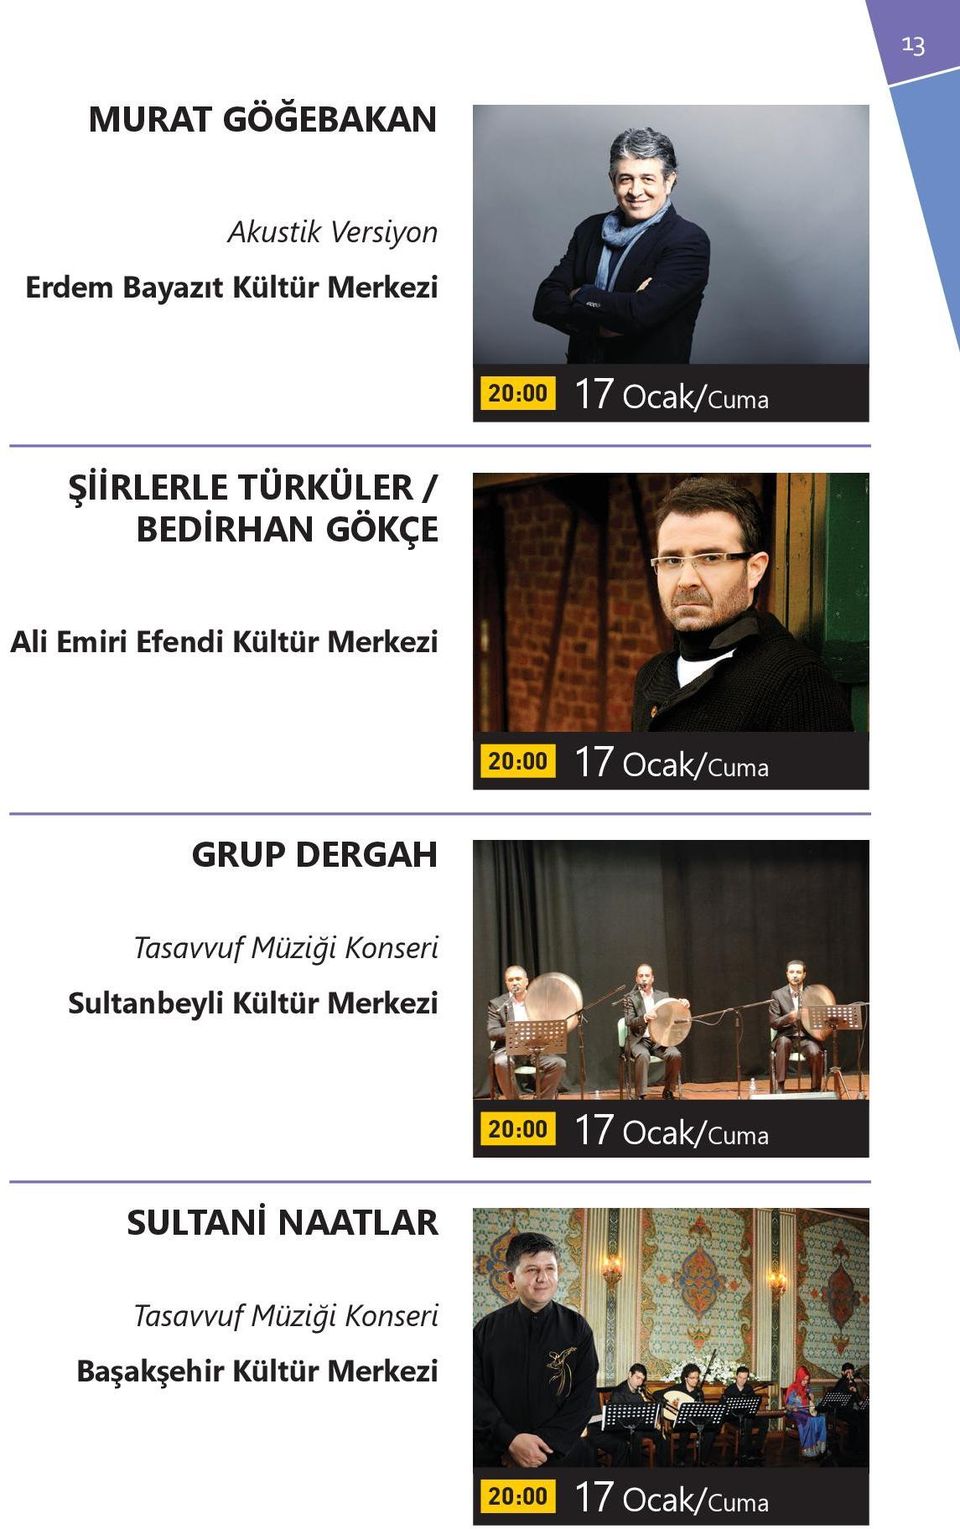 Tasavvuf Müziği Konseri Sultanbeyli Kültür Merkezi 17 Ocak/Cuma